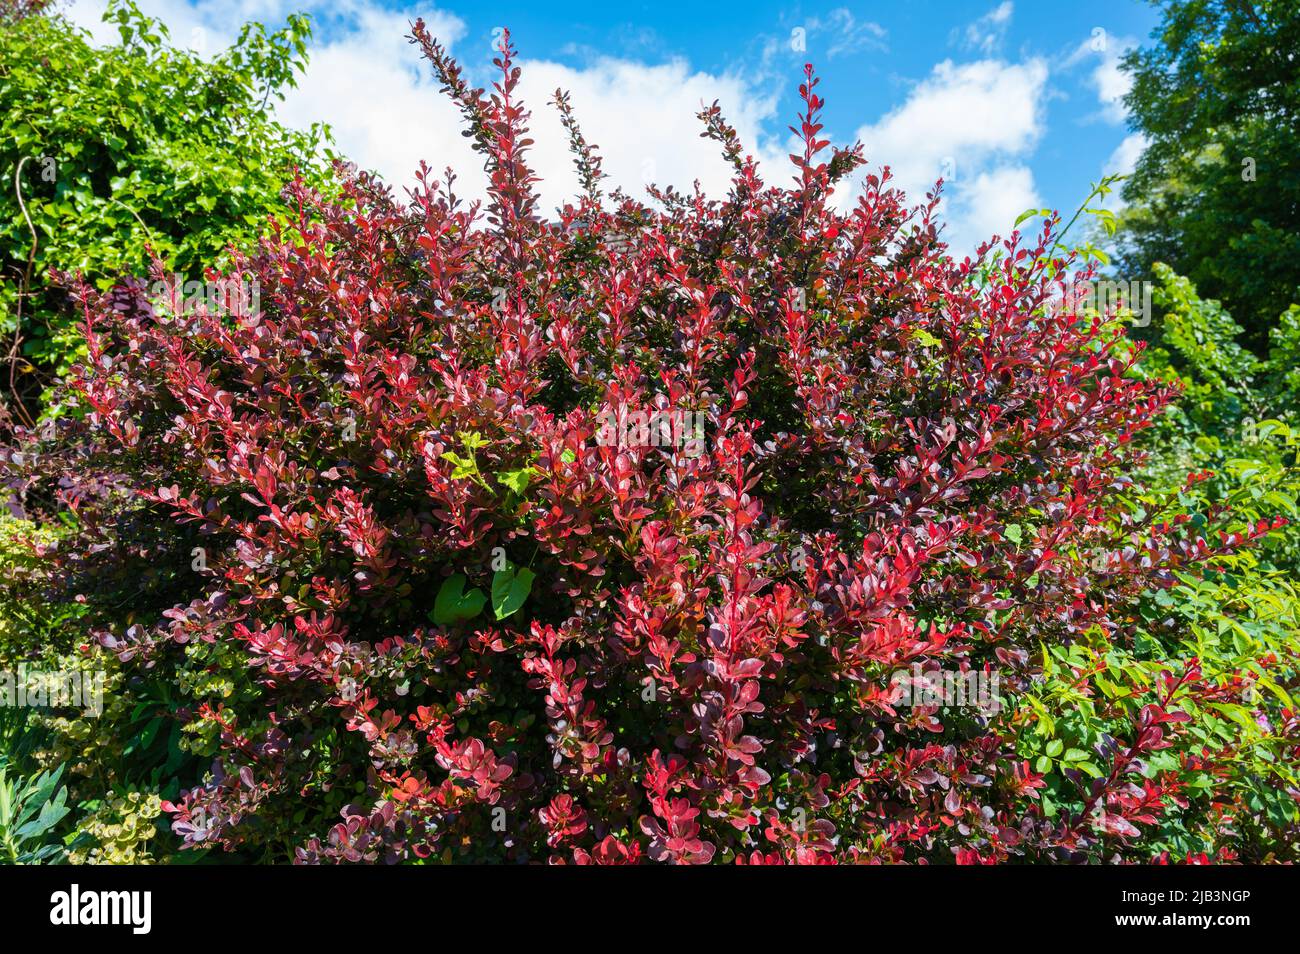 Arbusto de barbero japonés (Berberis thunbergii), un arbusto espinoso de hoja caduca con hojas rojas que crecen a finales de primavera en West Sussex, Inglaterra, Reino Unido. Foto de stock